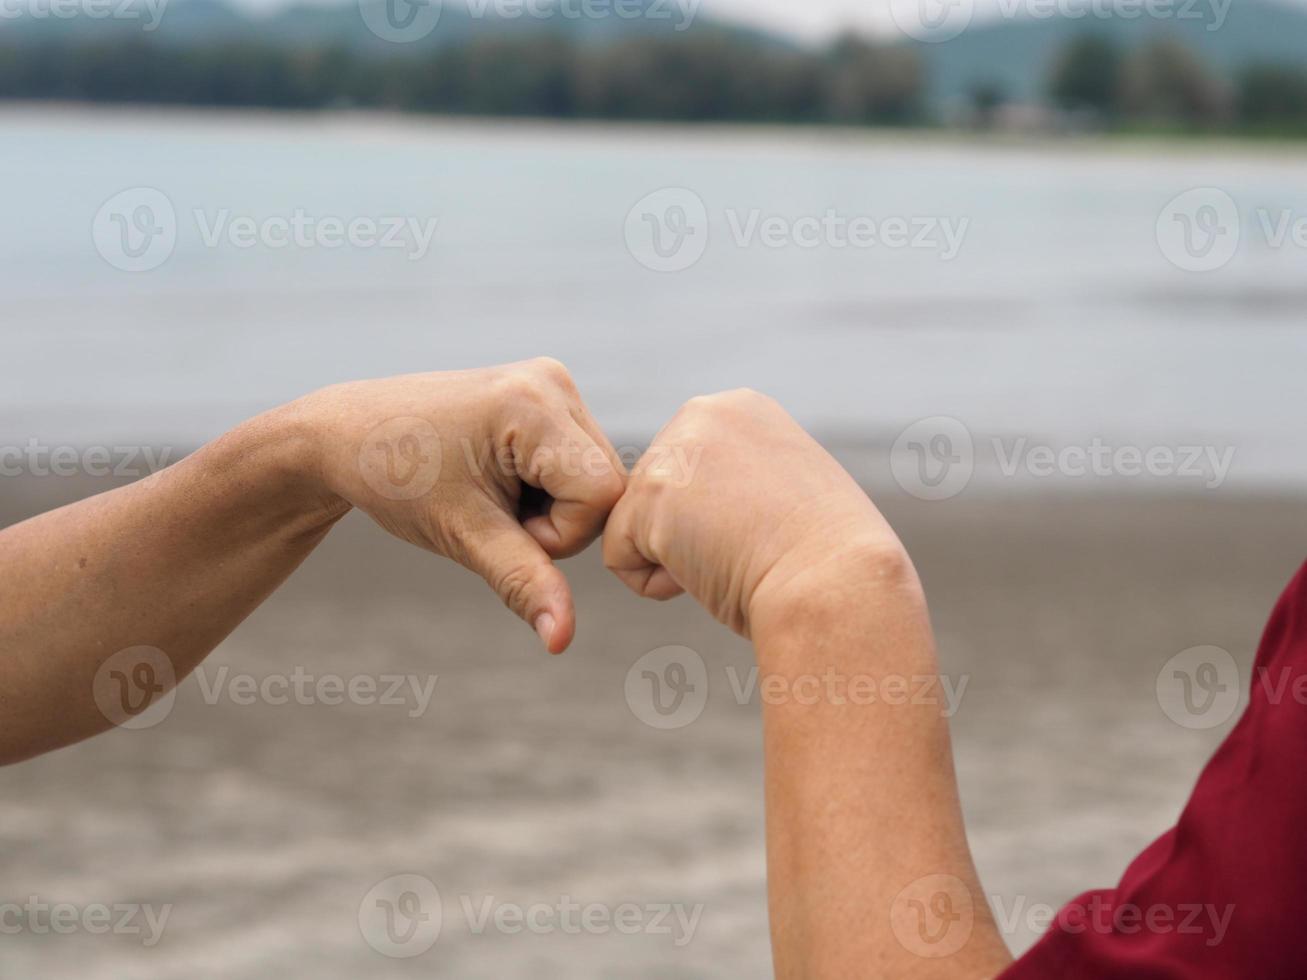 due donne alternative strette di mano pugno chiuso saluto a mano nella situazione di un'epidemia covid 19, coronavirus nuovo normale distanziamento sociale foto